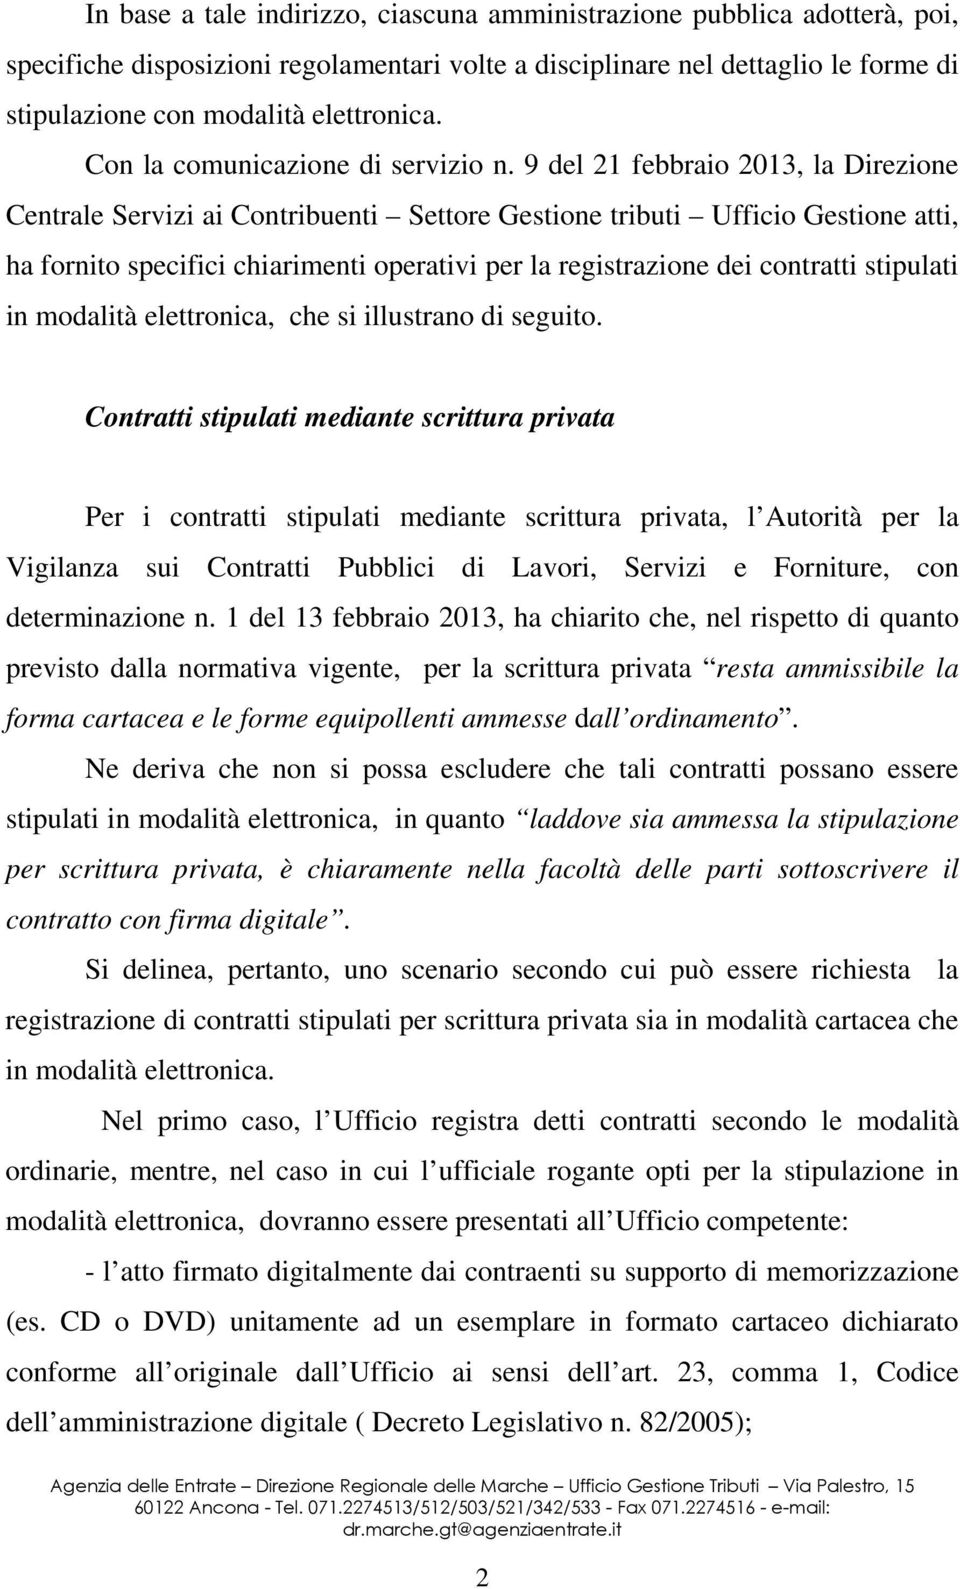 9 del 21 febbraio 2013, la Direzione Centrale Servizi ai Contribuenti Settore Gestione tributi Ufficio Gestione atti, ha fornito specifici chiarimenti operativi per la registrazione dei contratti